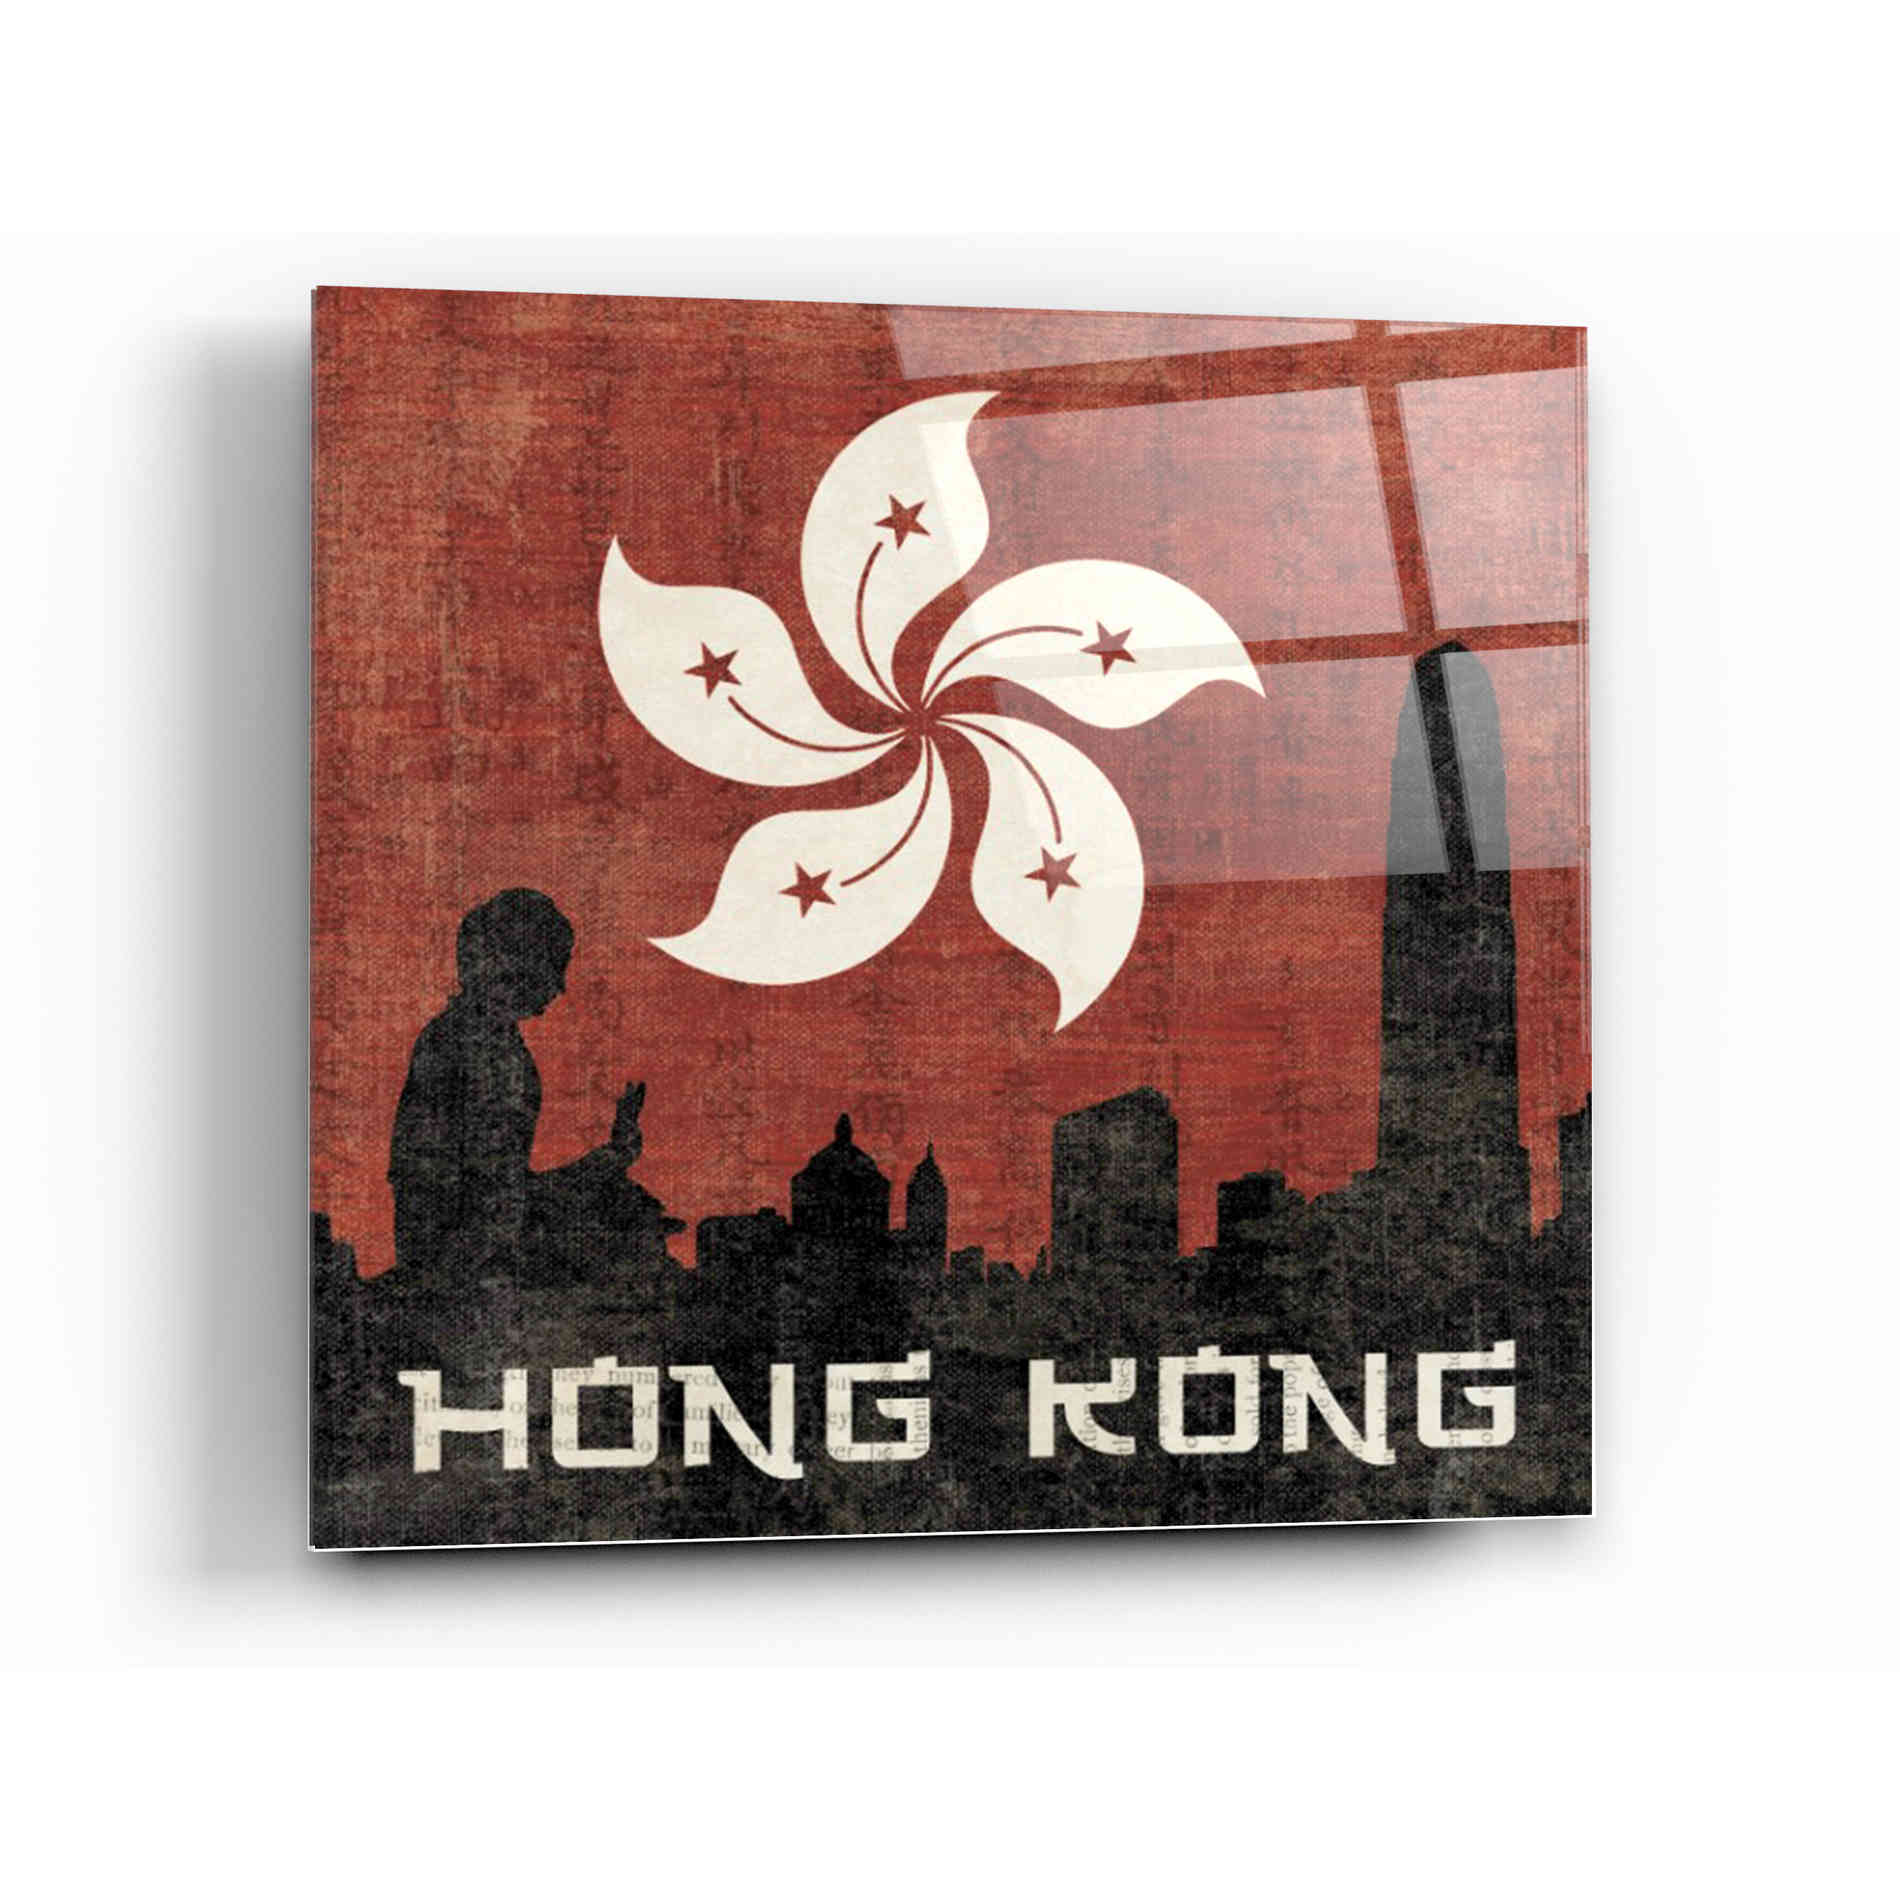 Epic Art 'Hong Kong' by Moira Hershey, Acrylic Glass Wall Art,12 x 12